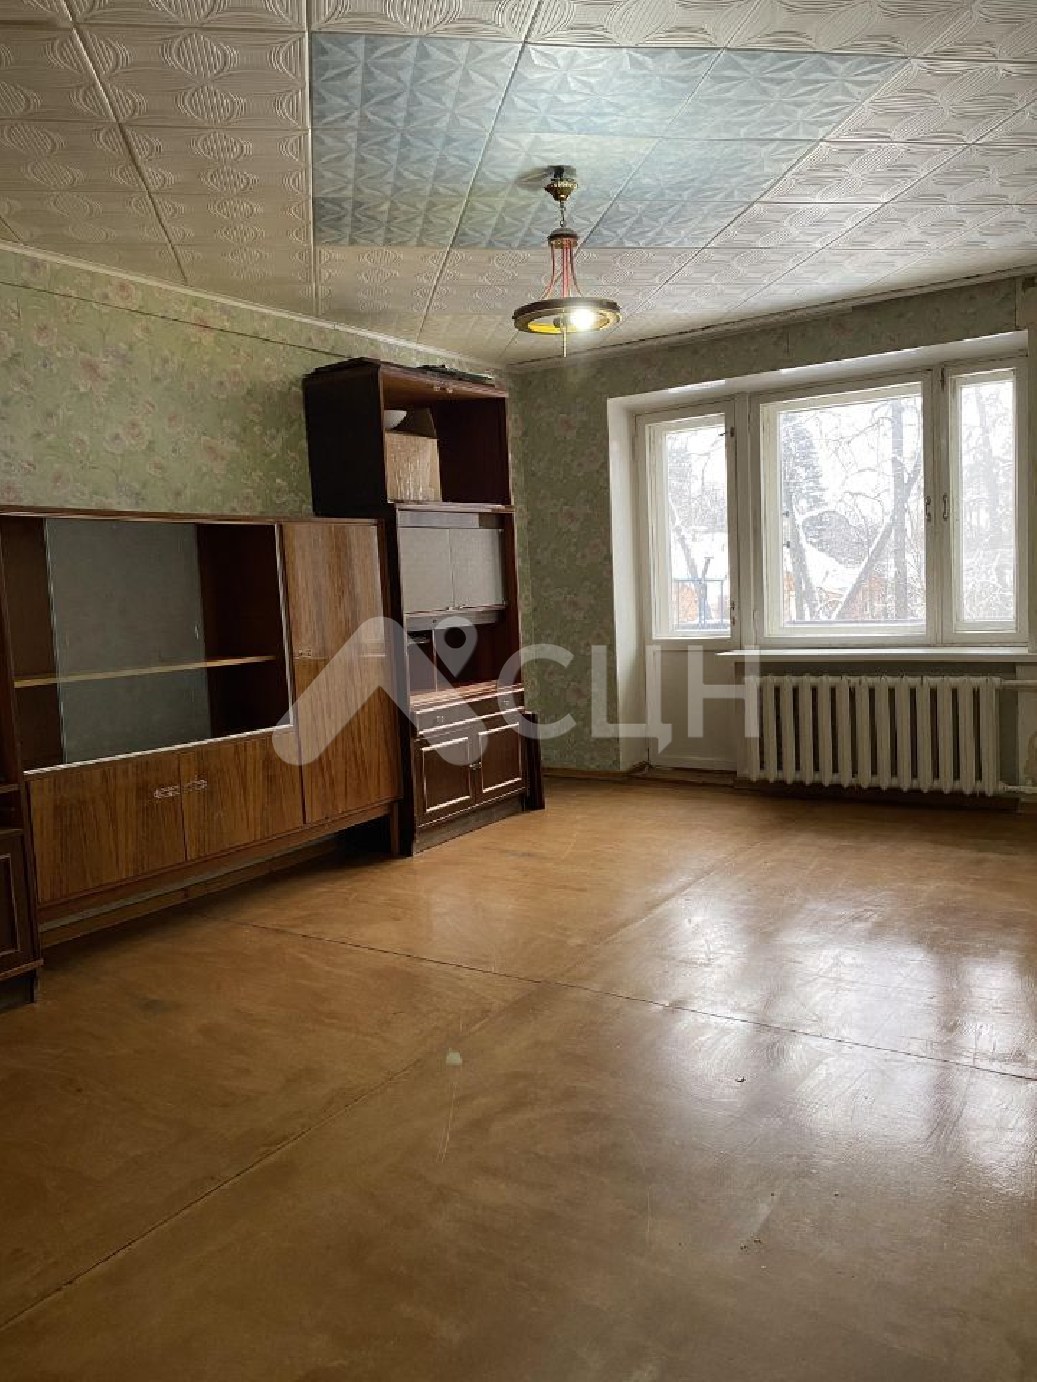 циан саров квартиры
: Г. Саров, улица Победы, 29, 2-комн квартира, этаж 2 из 5, продажа.